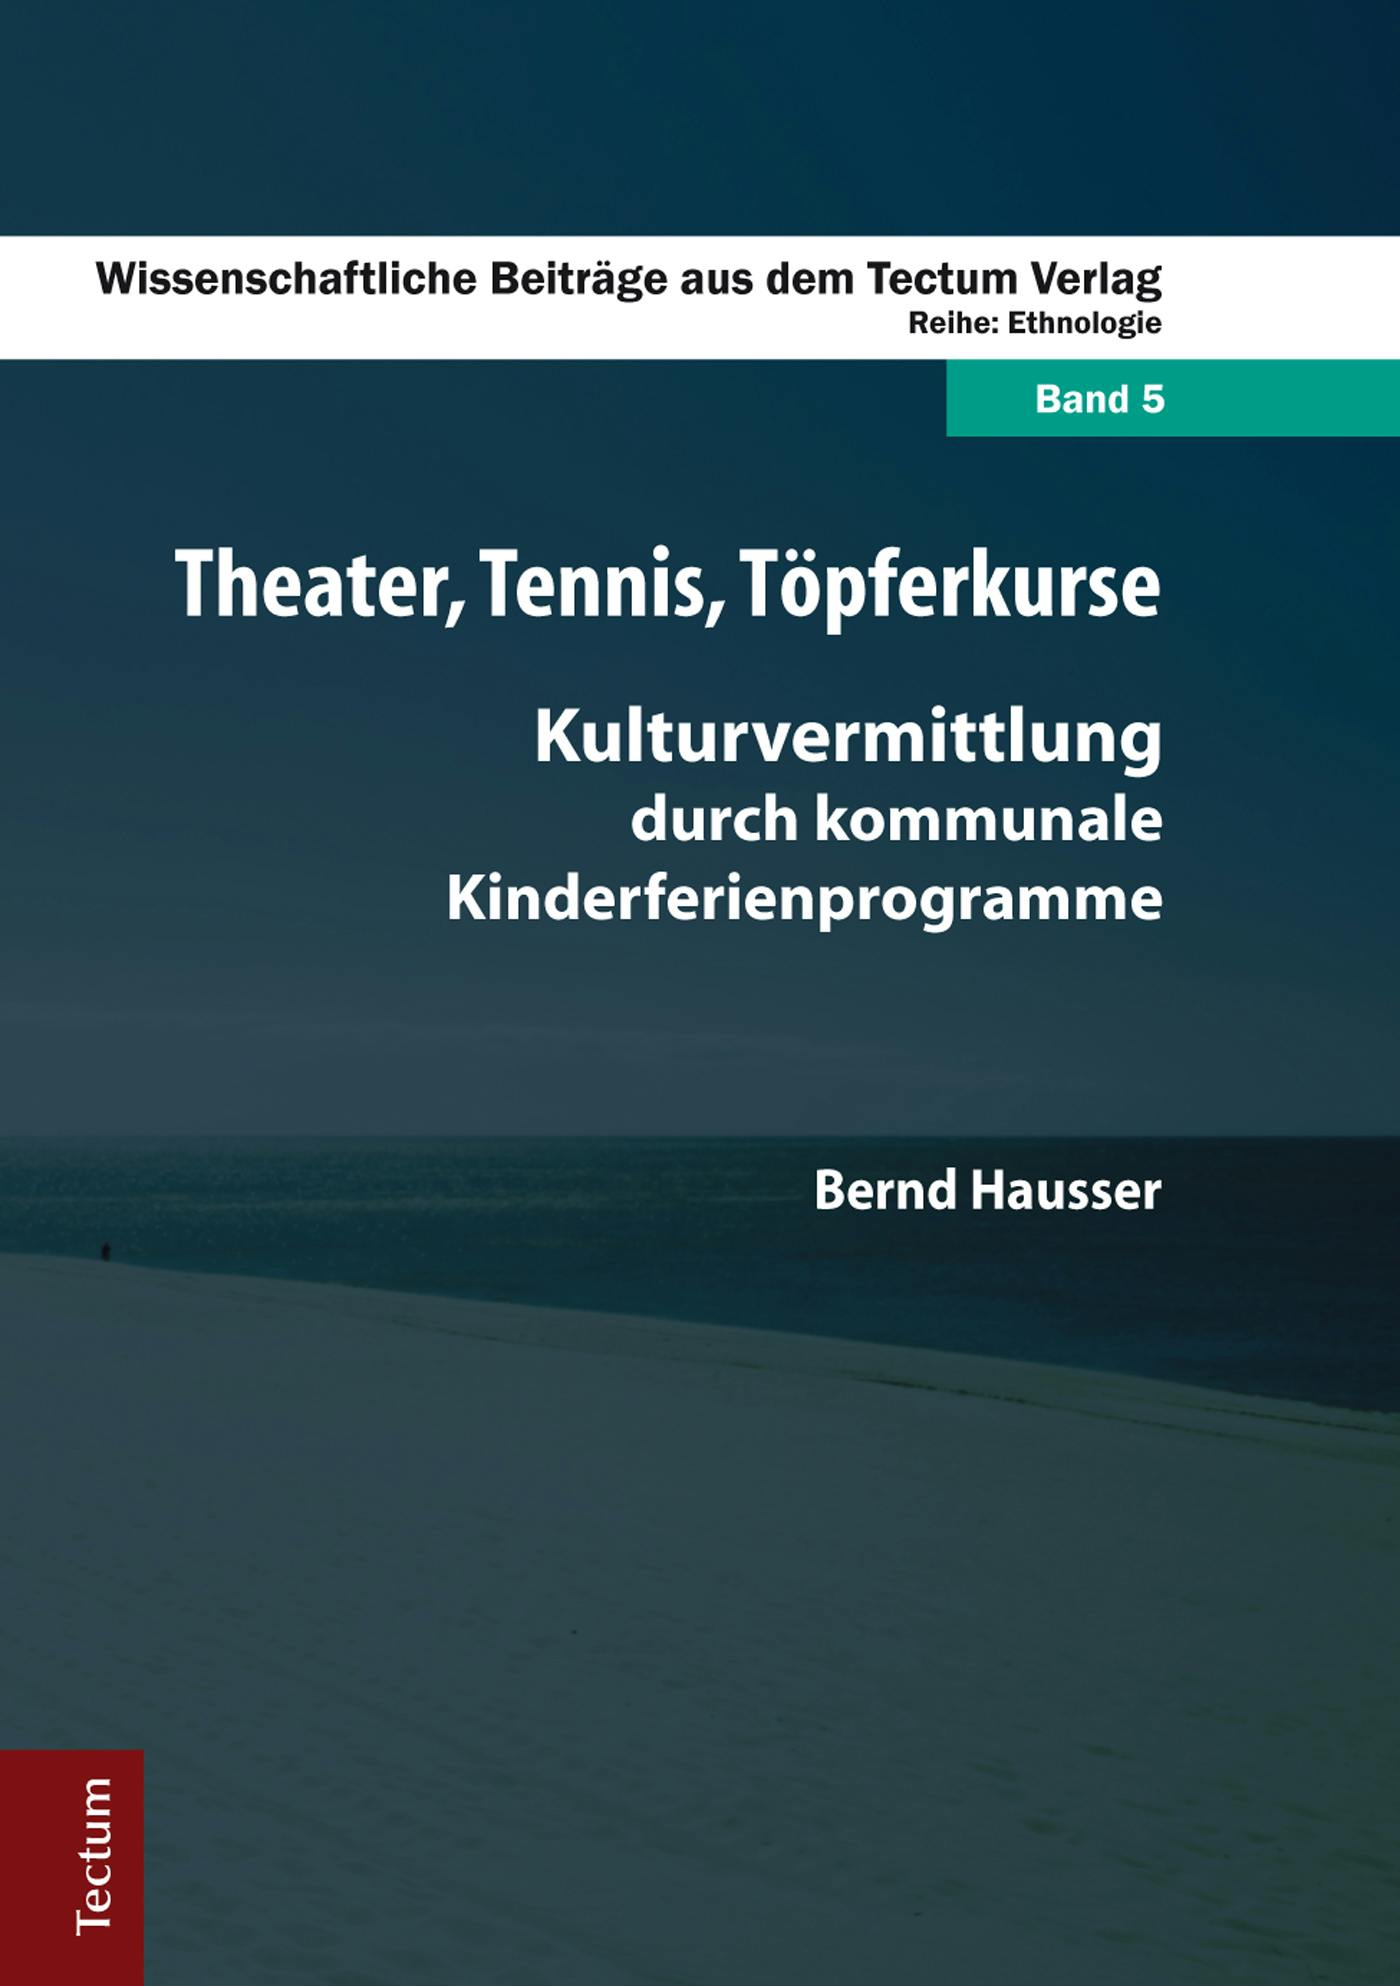 Theater, Tennis, Töpferkurse: Kulturvermittlung durch kommunale Kinderferienprogramme - Bernd Hausser